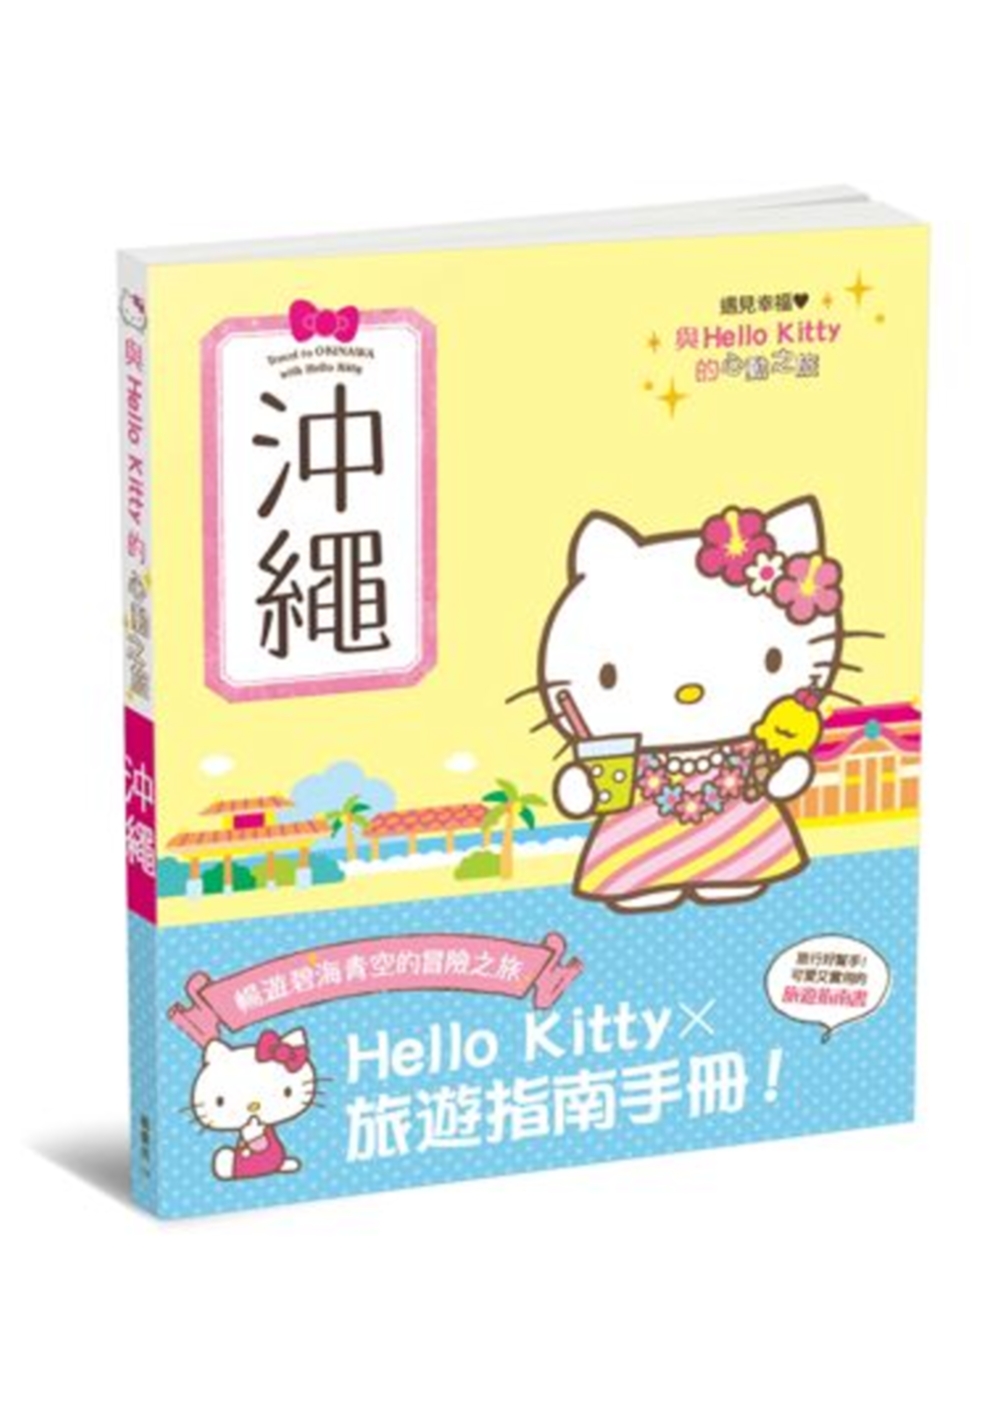 與Hello Kitty的心動之旅 沖繩(限台灣)